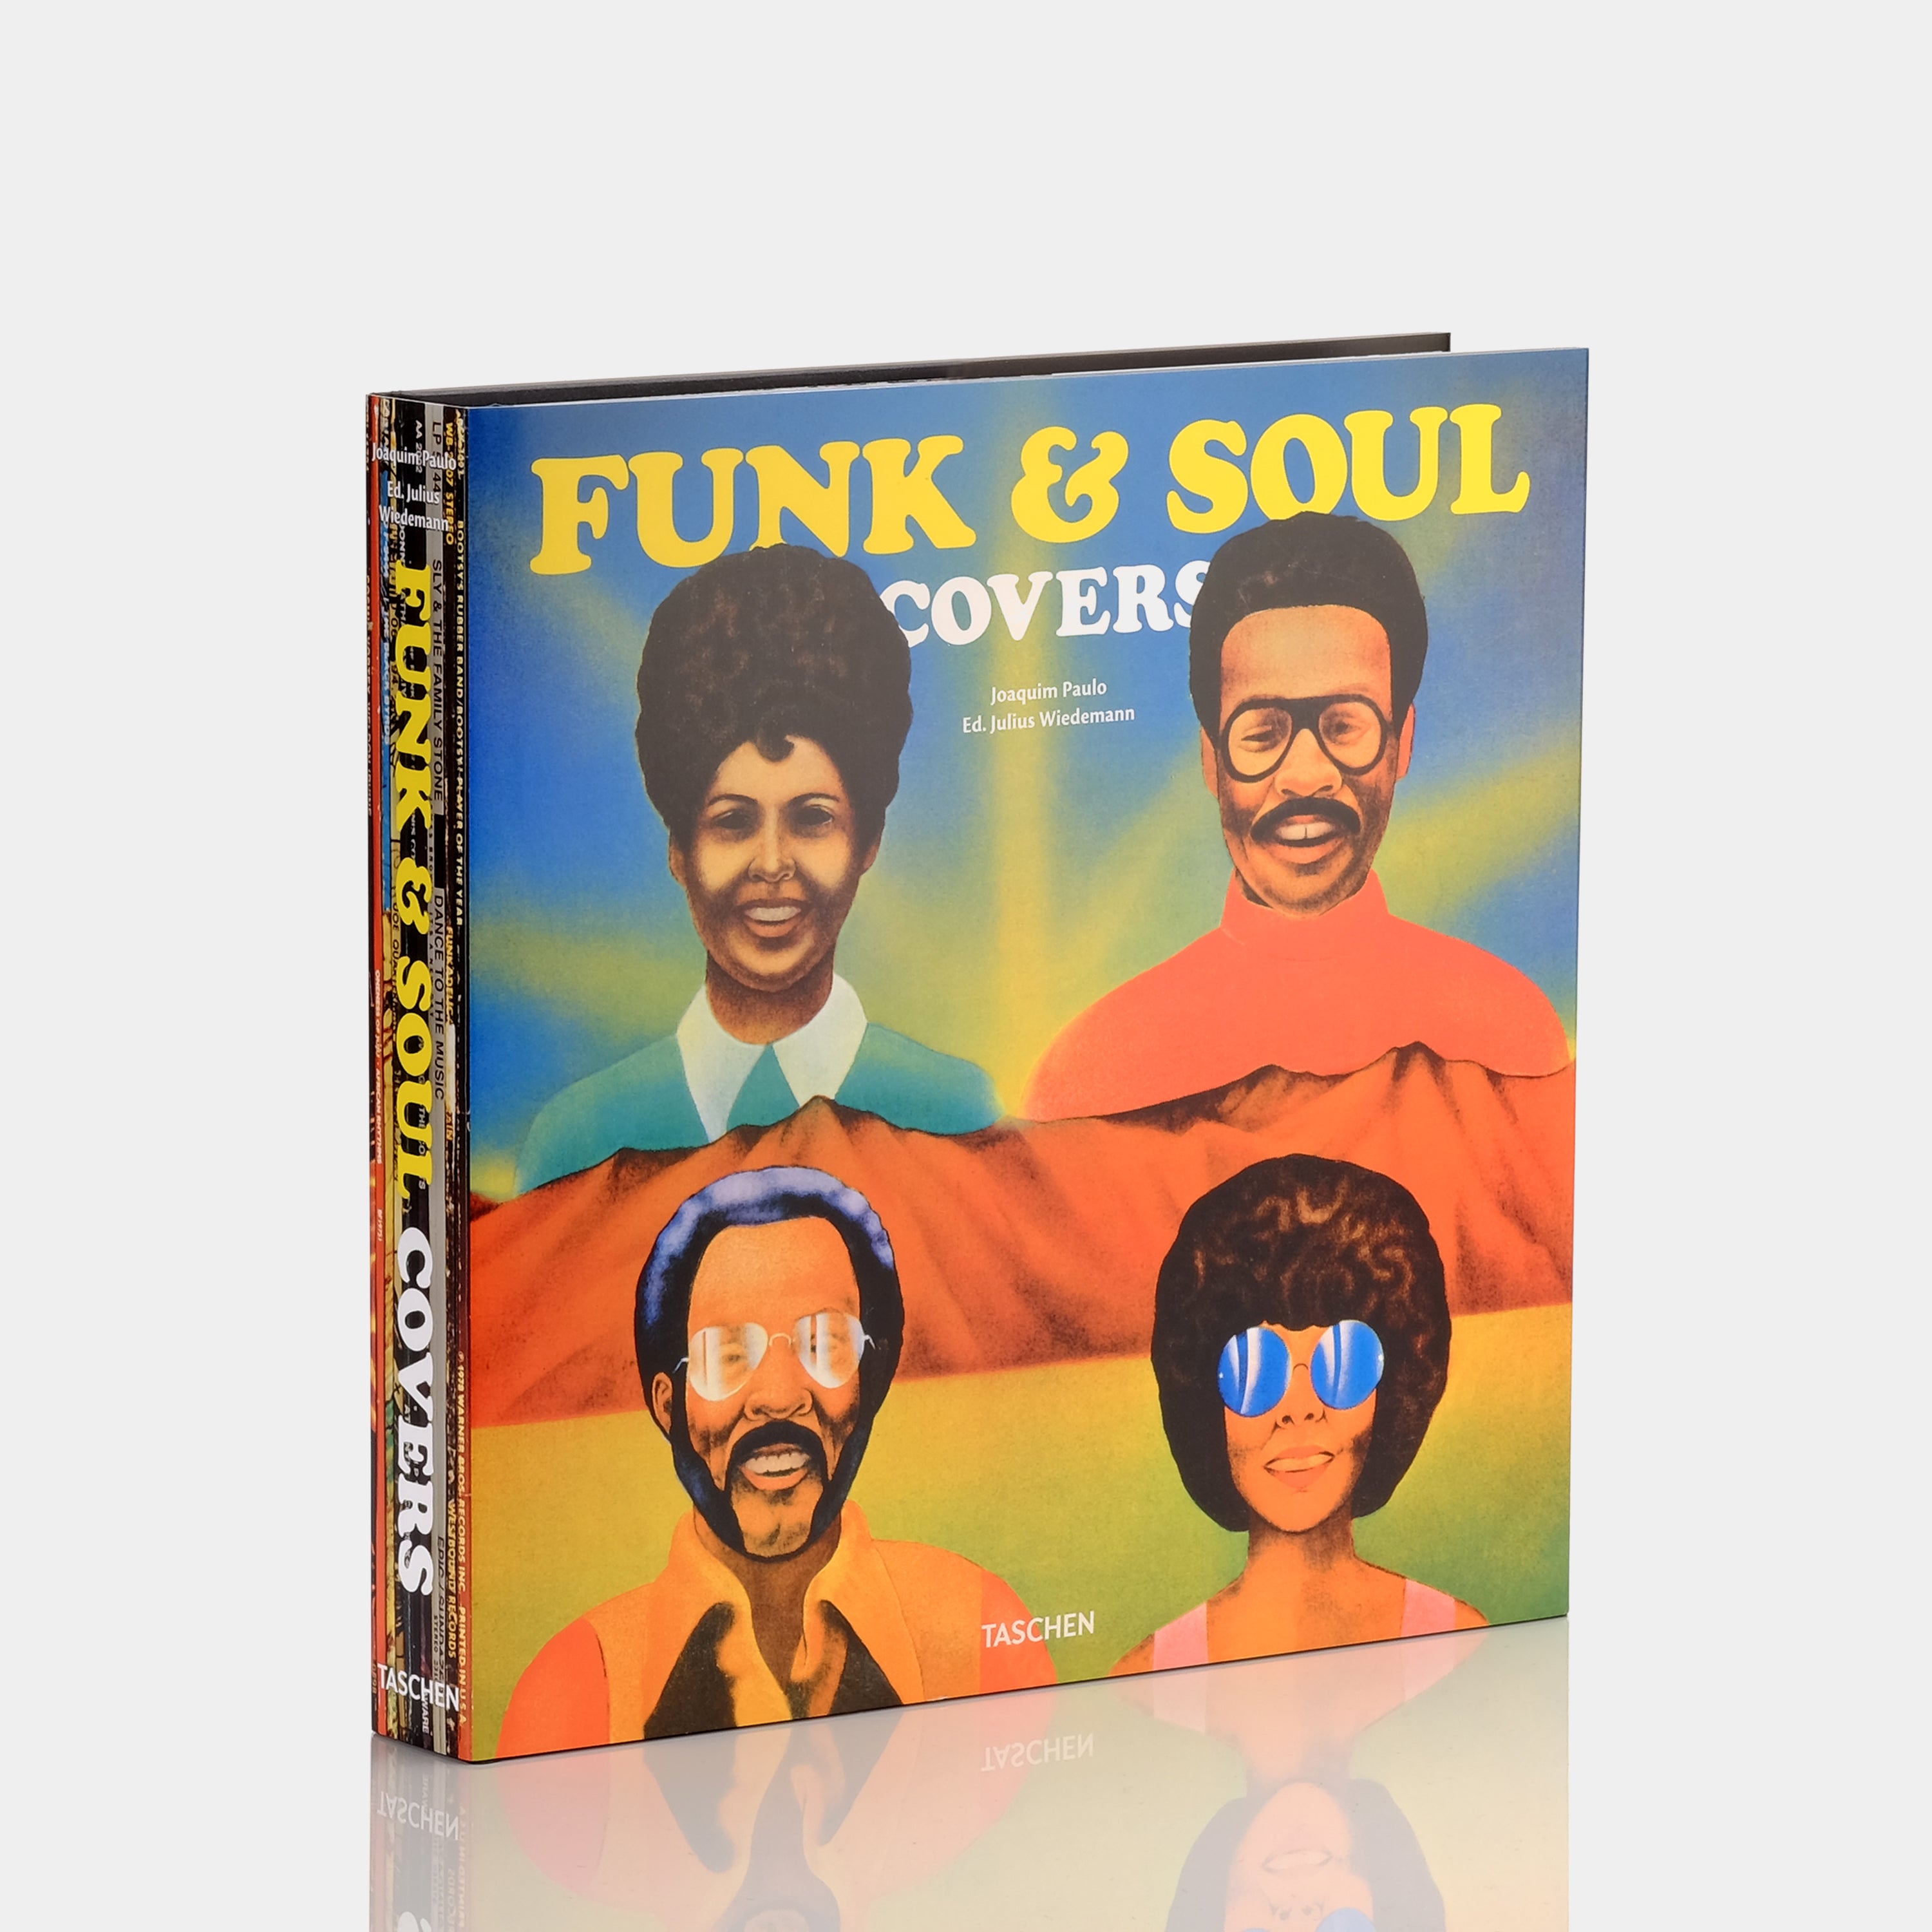 Funk & Soul Covers Taschen Book